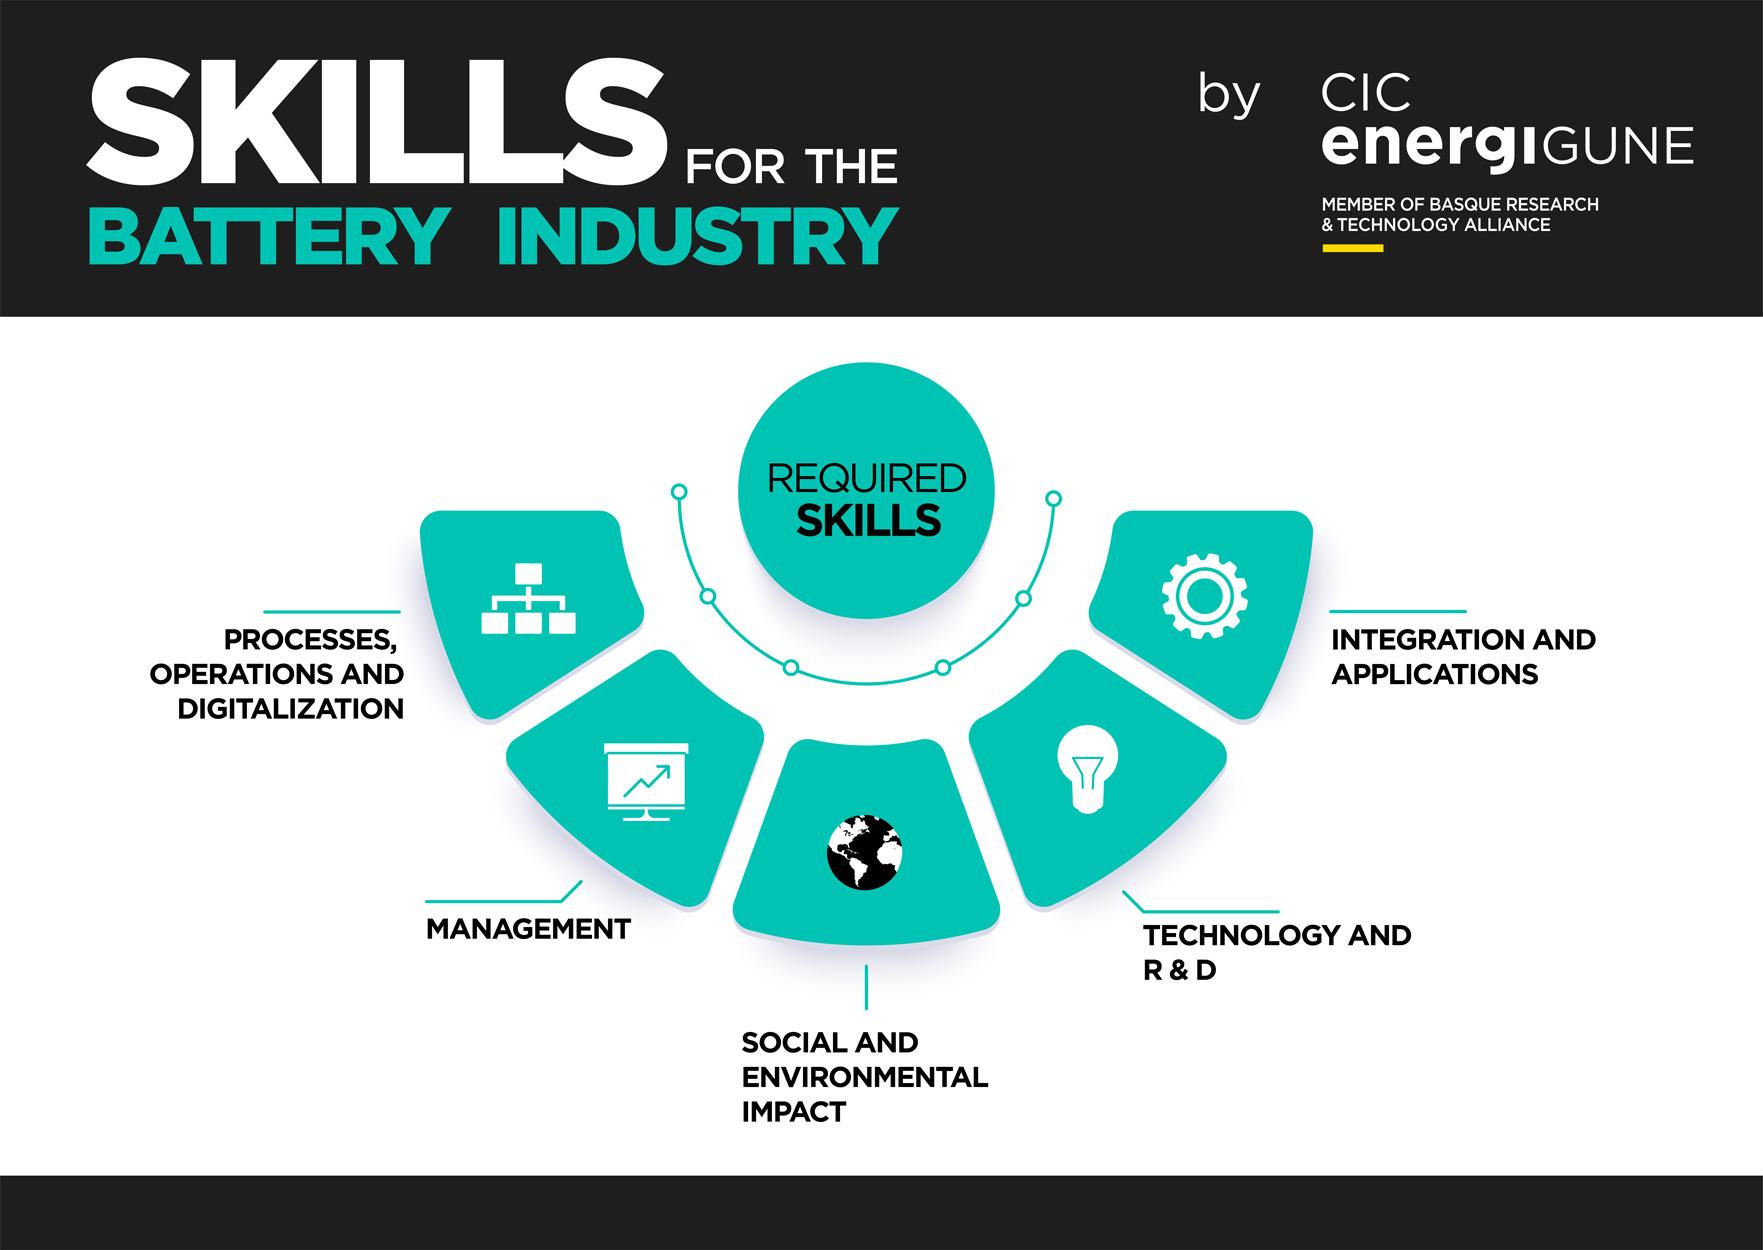 Gráfico desarrollado por CIC energiGUNE que muestra las habilidades necesarias para la industria de las baterías. De izquierda a derecha: procesos, operaciones y digitalización ; gestión ; impacto social y medioambiental ; I+D y tecnología; y integración